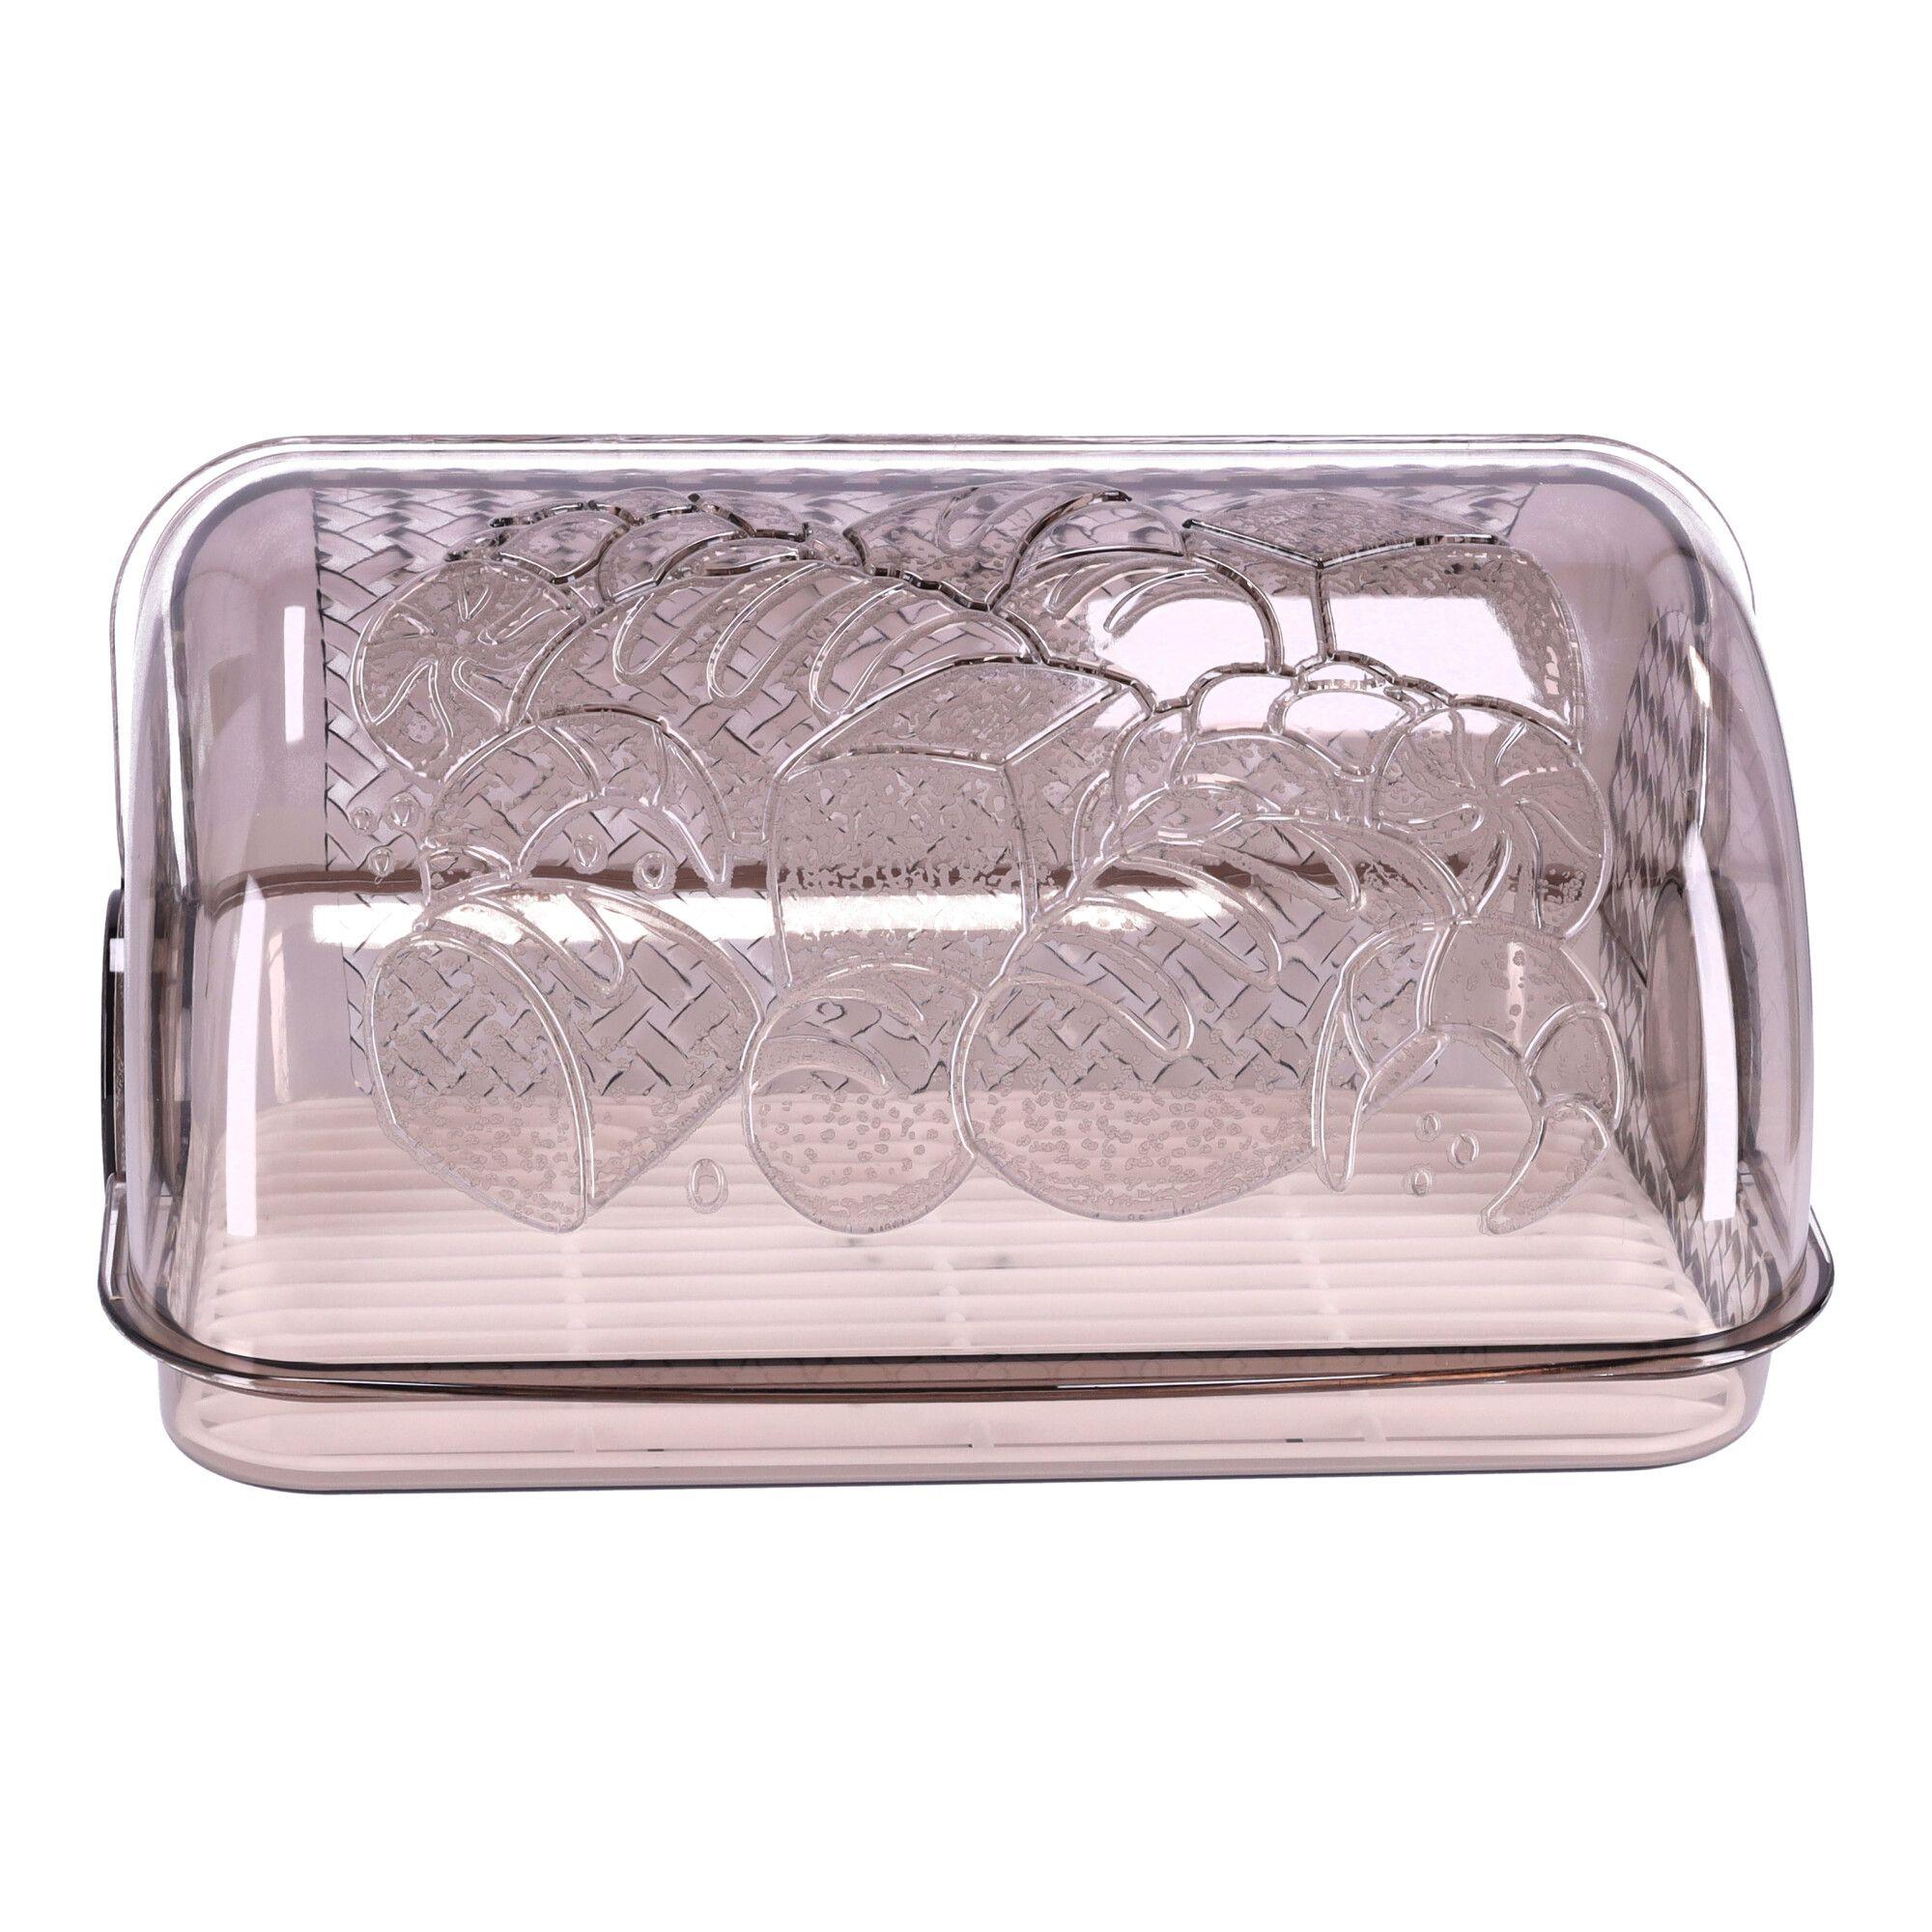 Plastic bread box, bread container, size 33x25x17 cm, POLISH PRODUCT